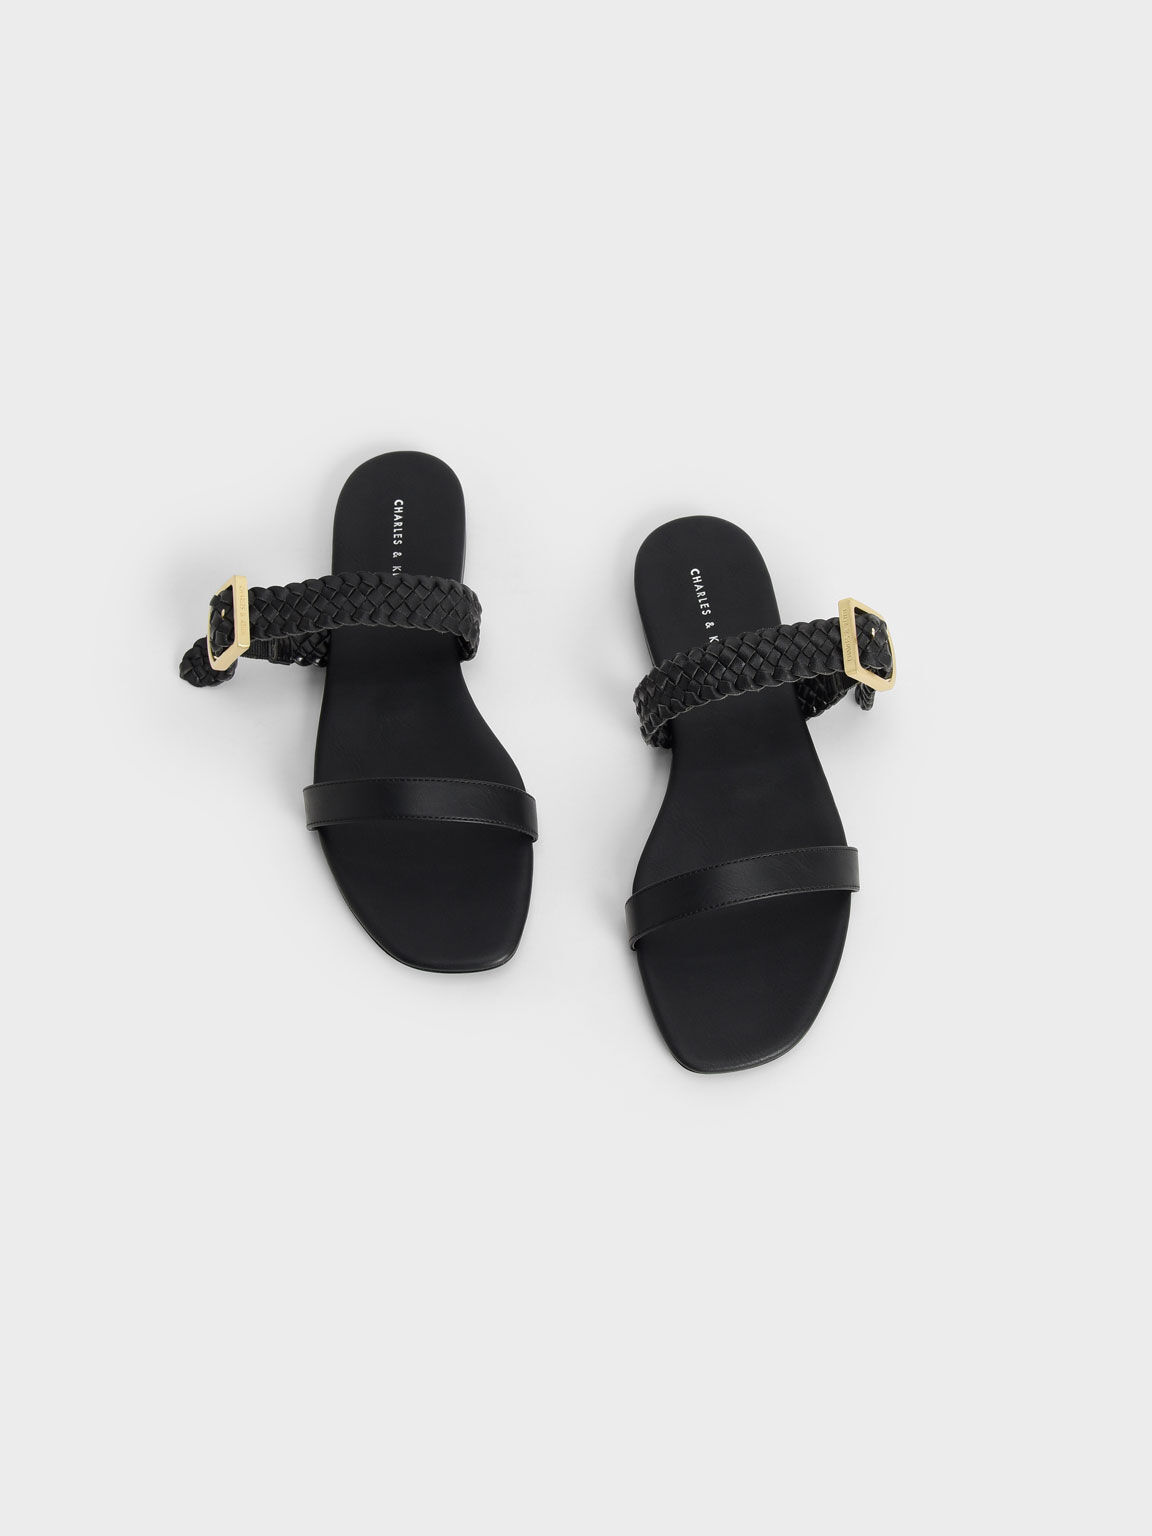 Woven Strap Slide Sandals, Black, hi-res